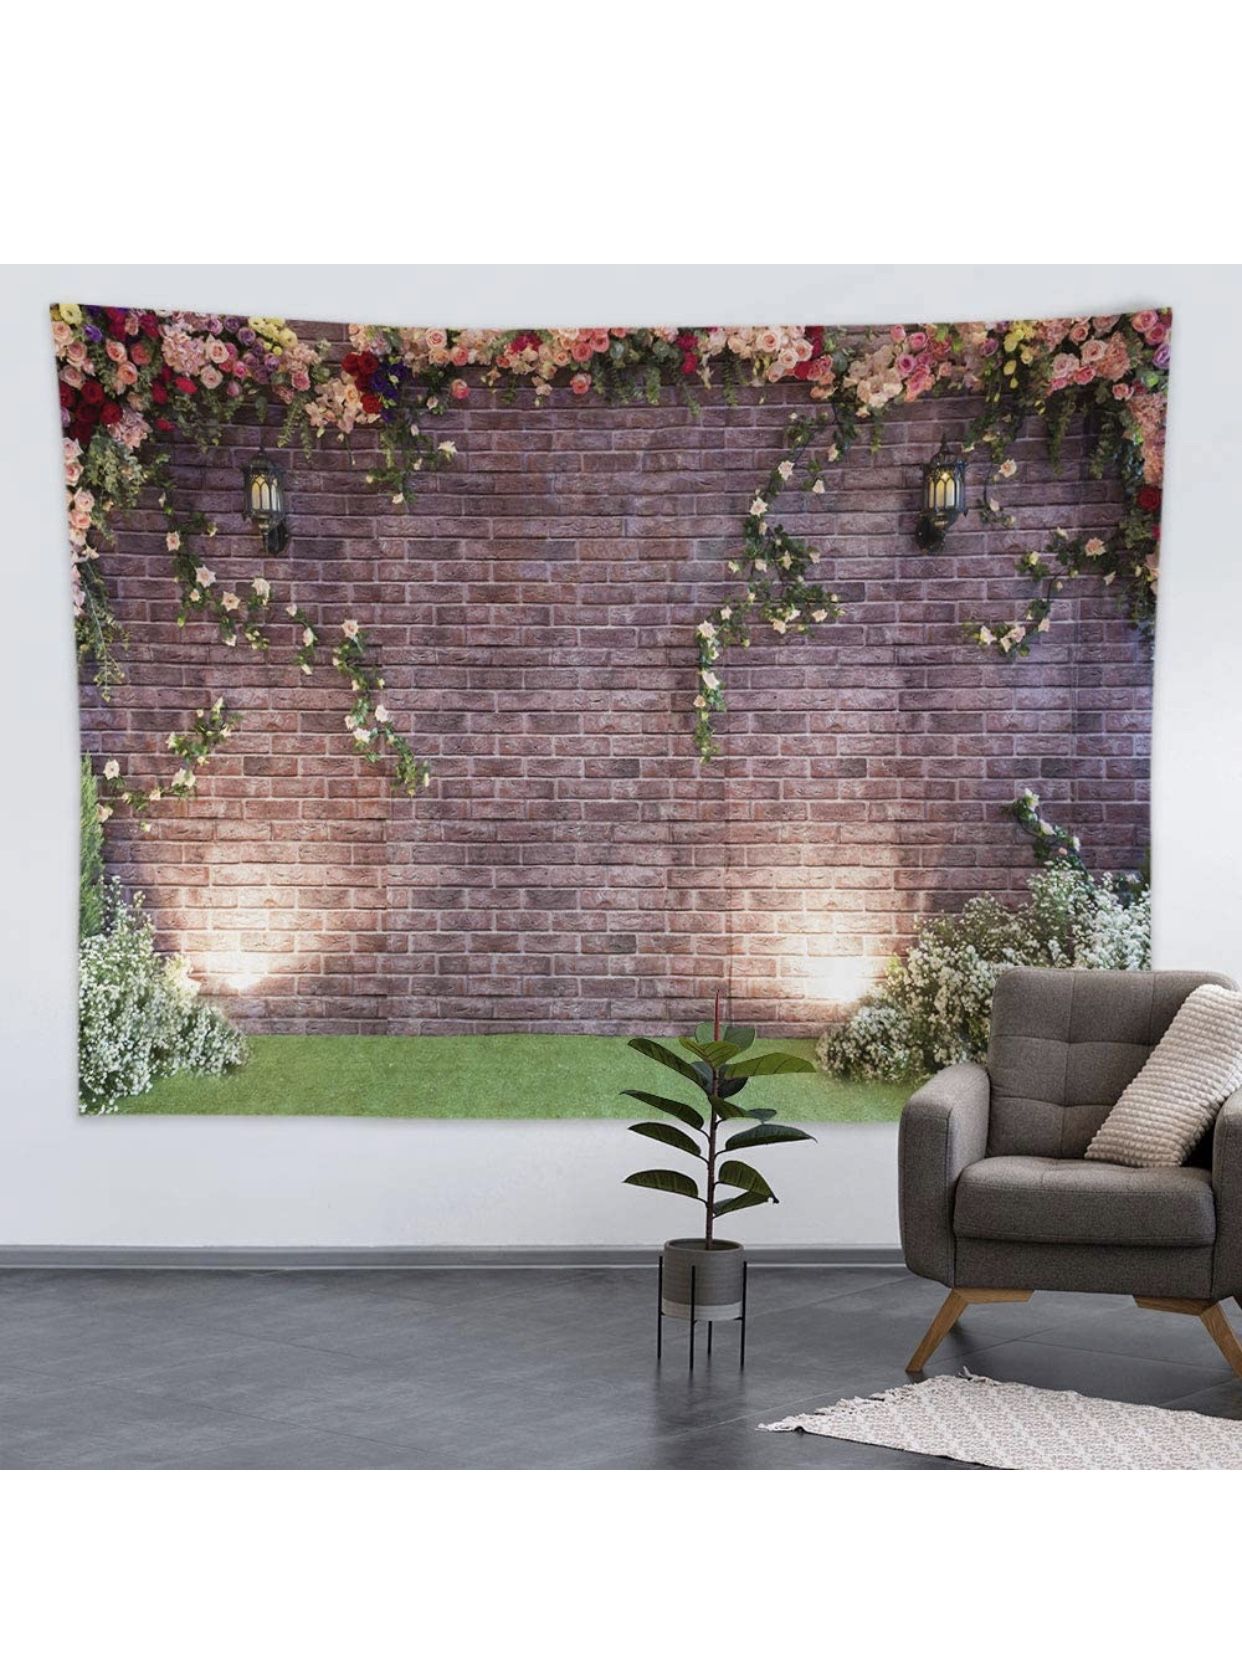 Brick Wall & Flower Backdrop 